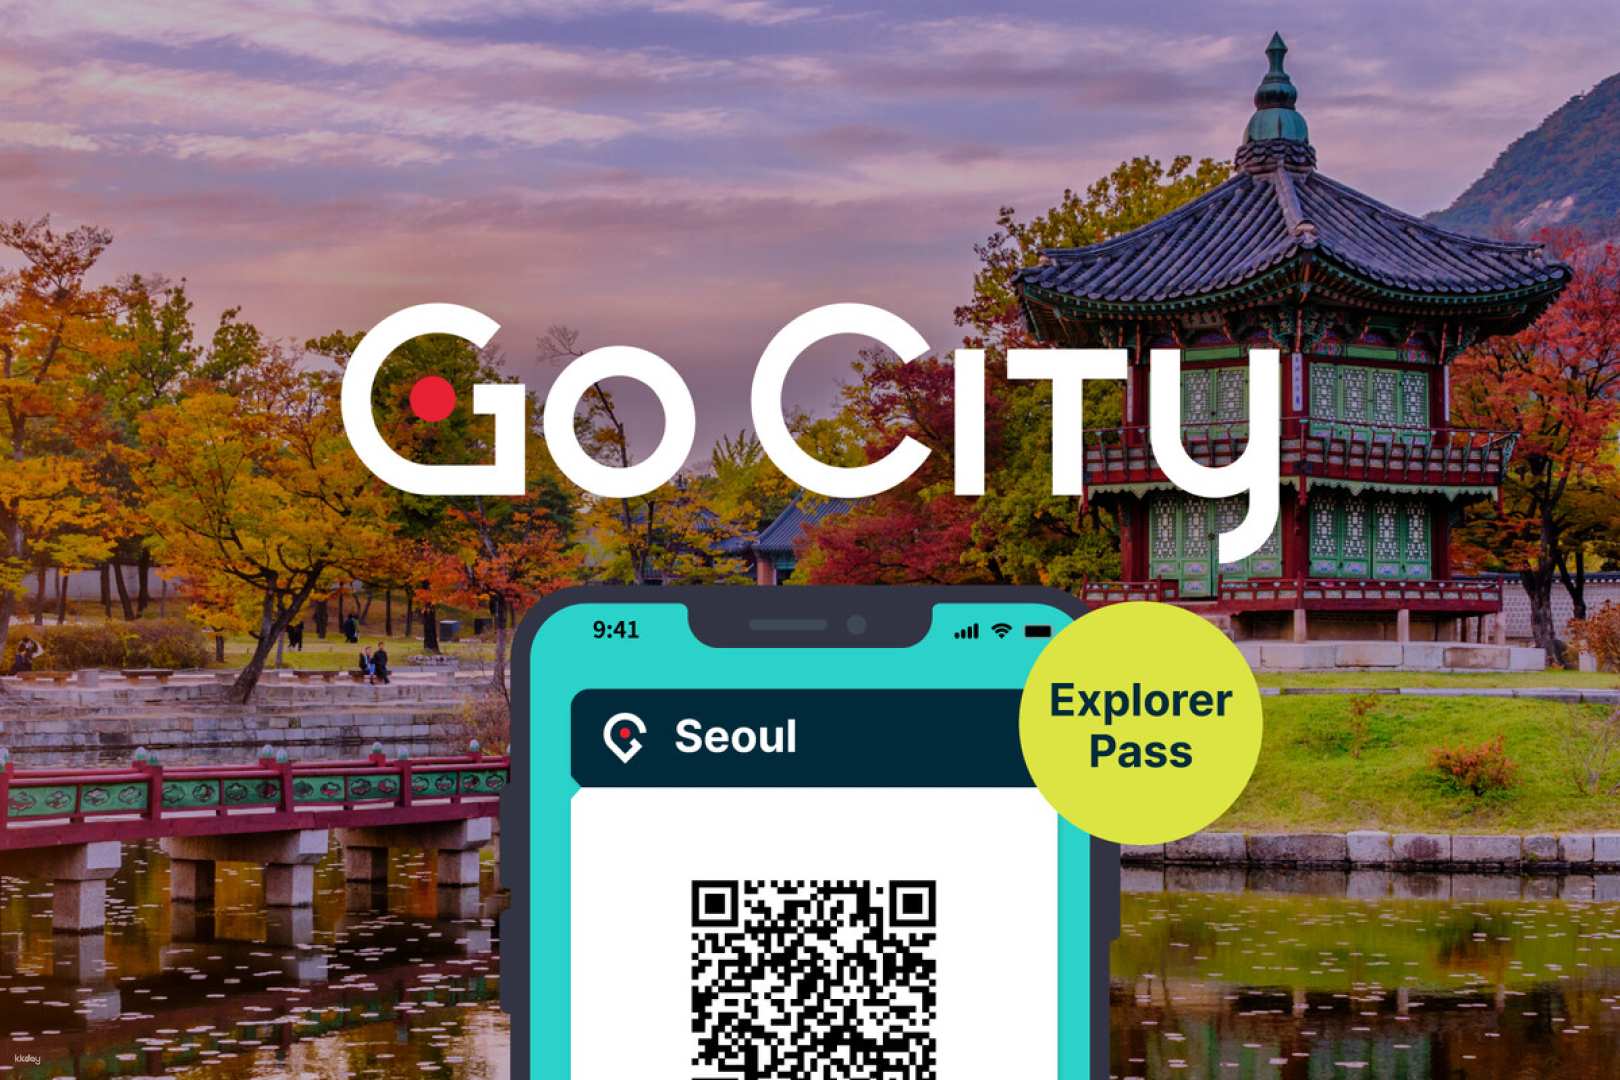 韓國-首爾探索者通行證 Seoul Explorer Pass| 任選首爾必去景點